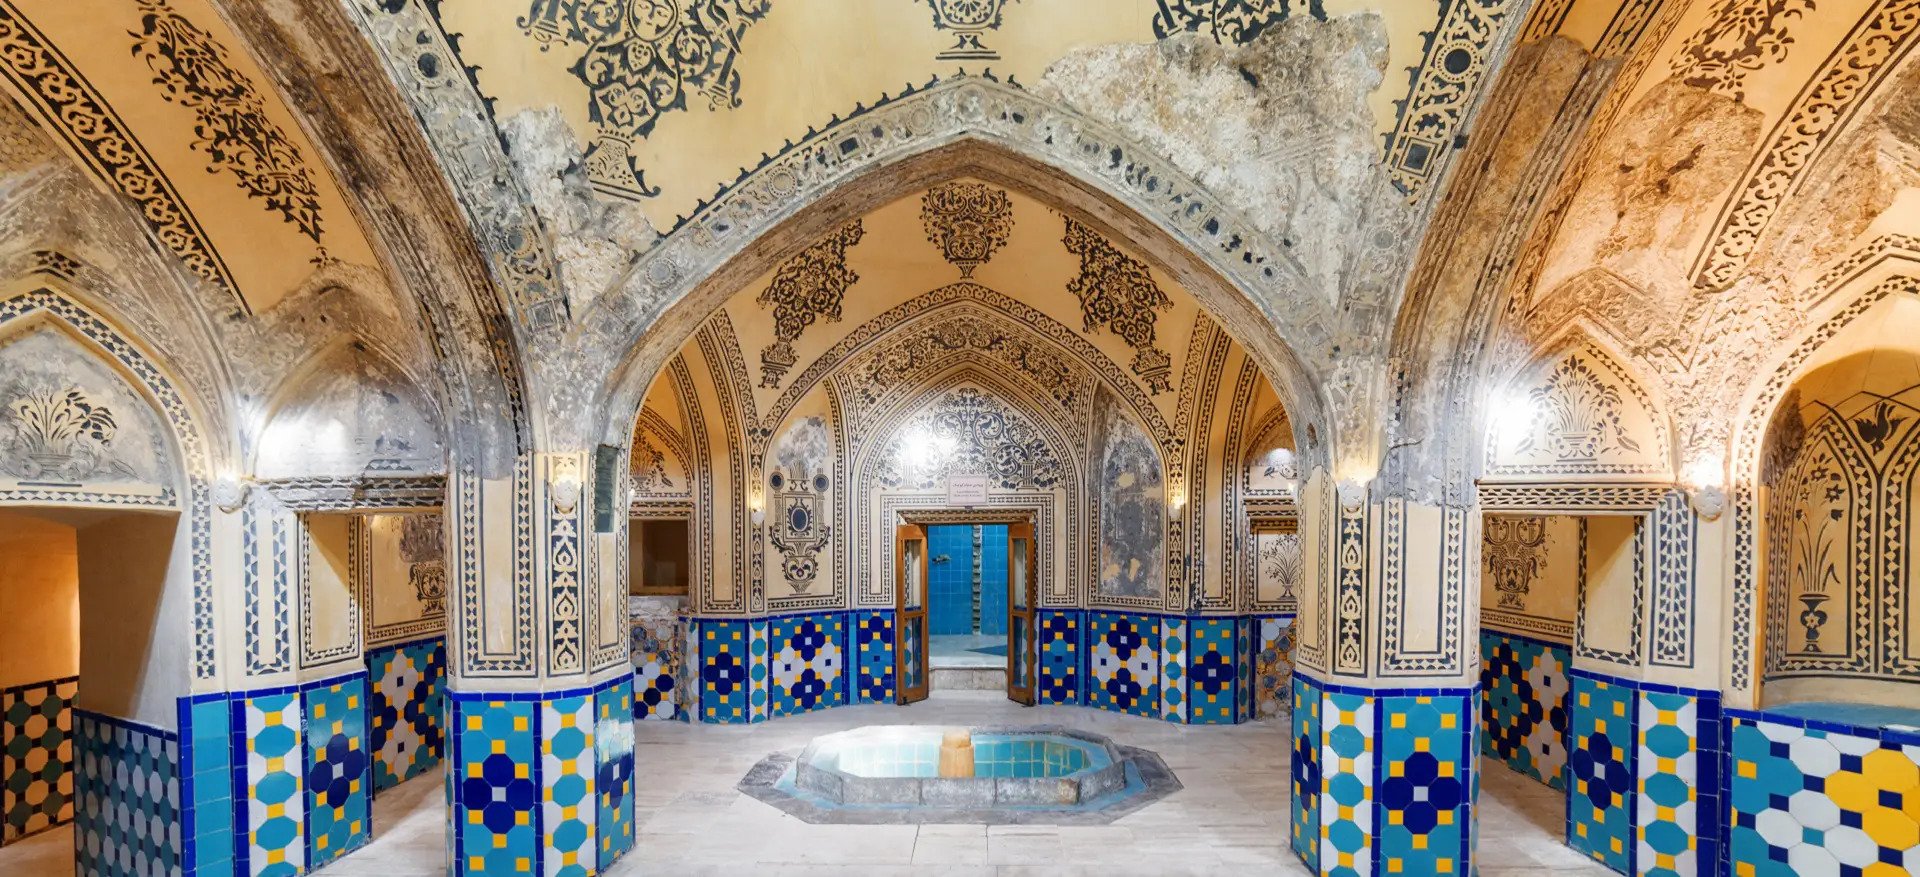 حمام شیح بهایی اصفهان از دیدنی های تاریخی